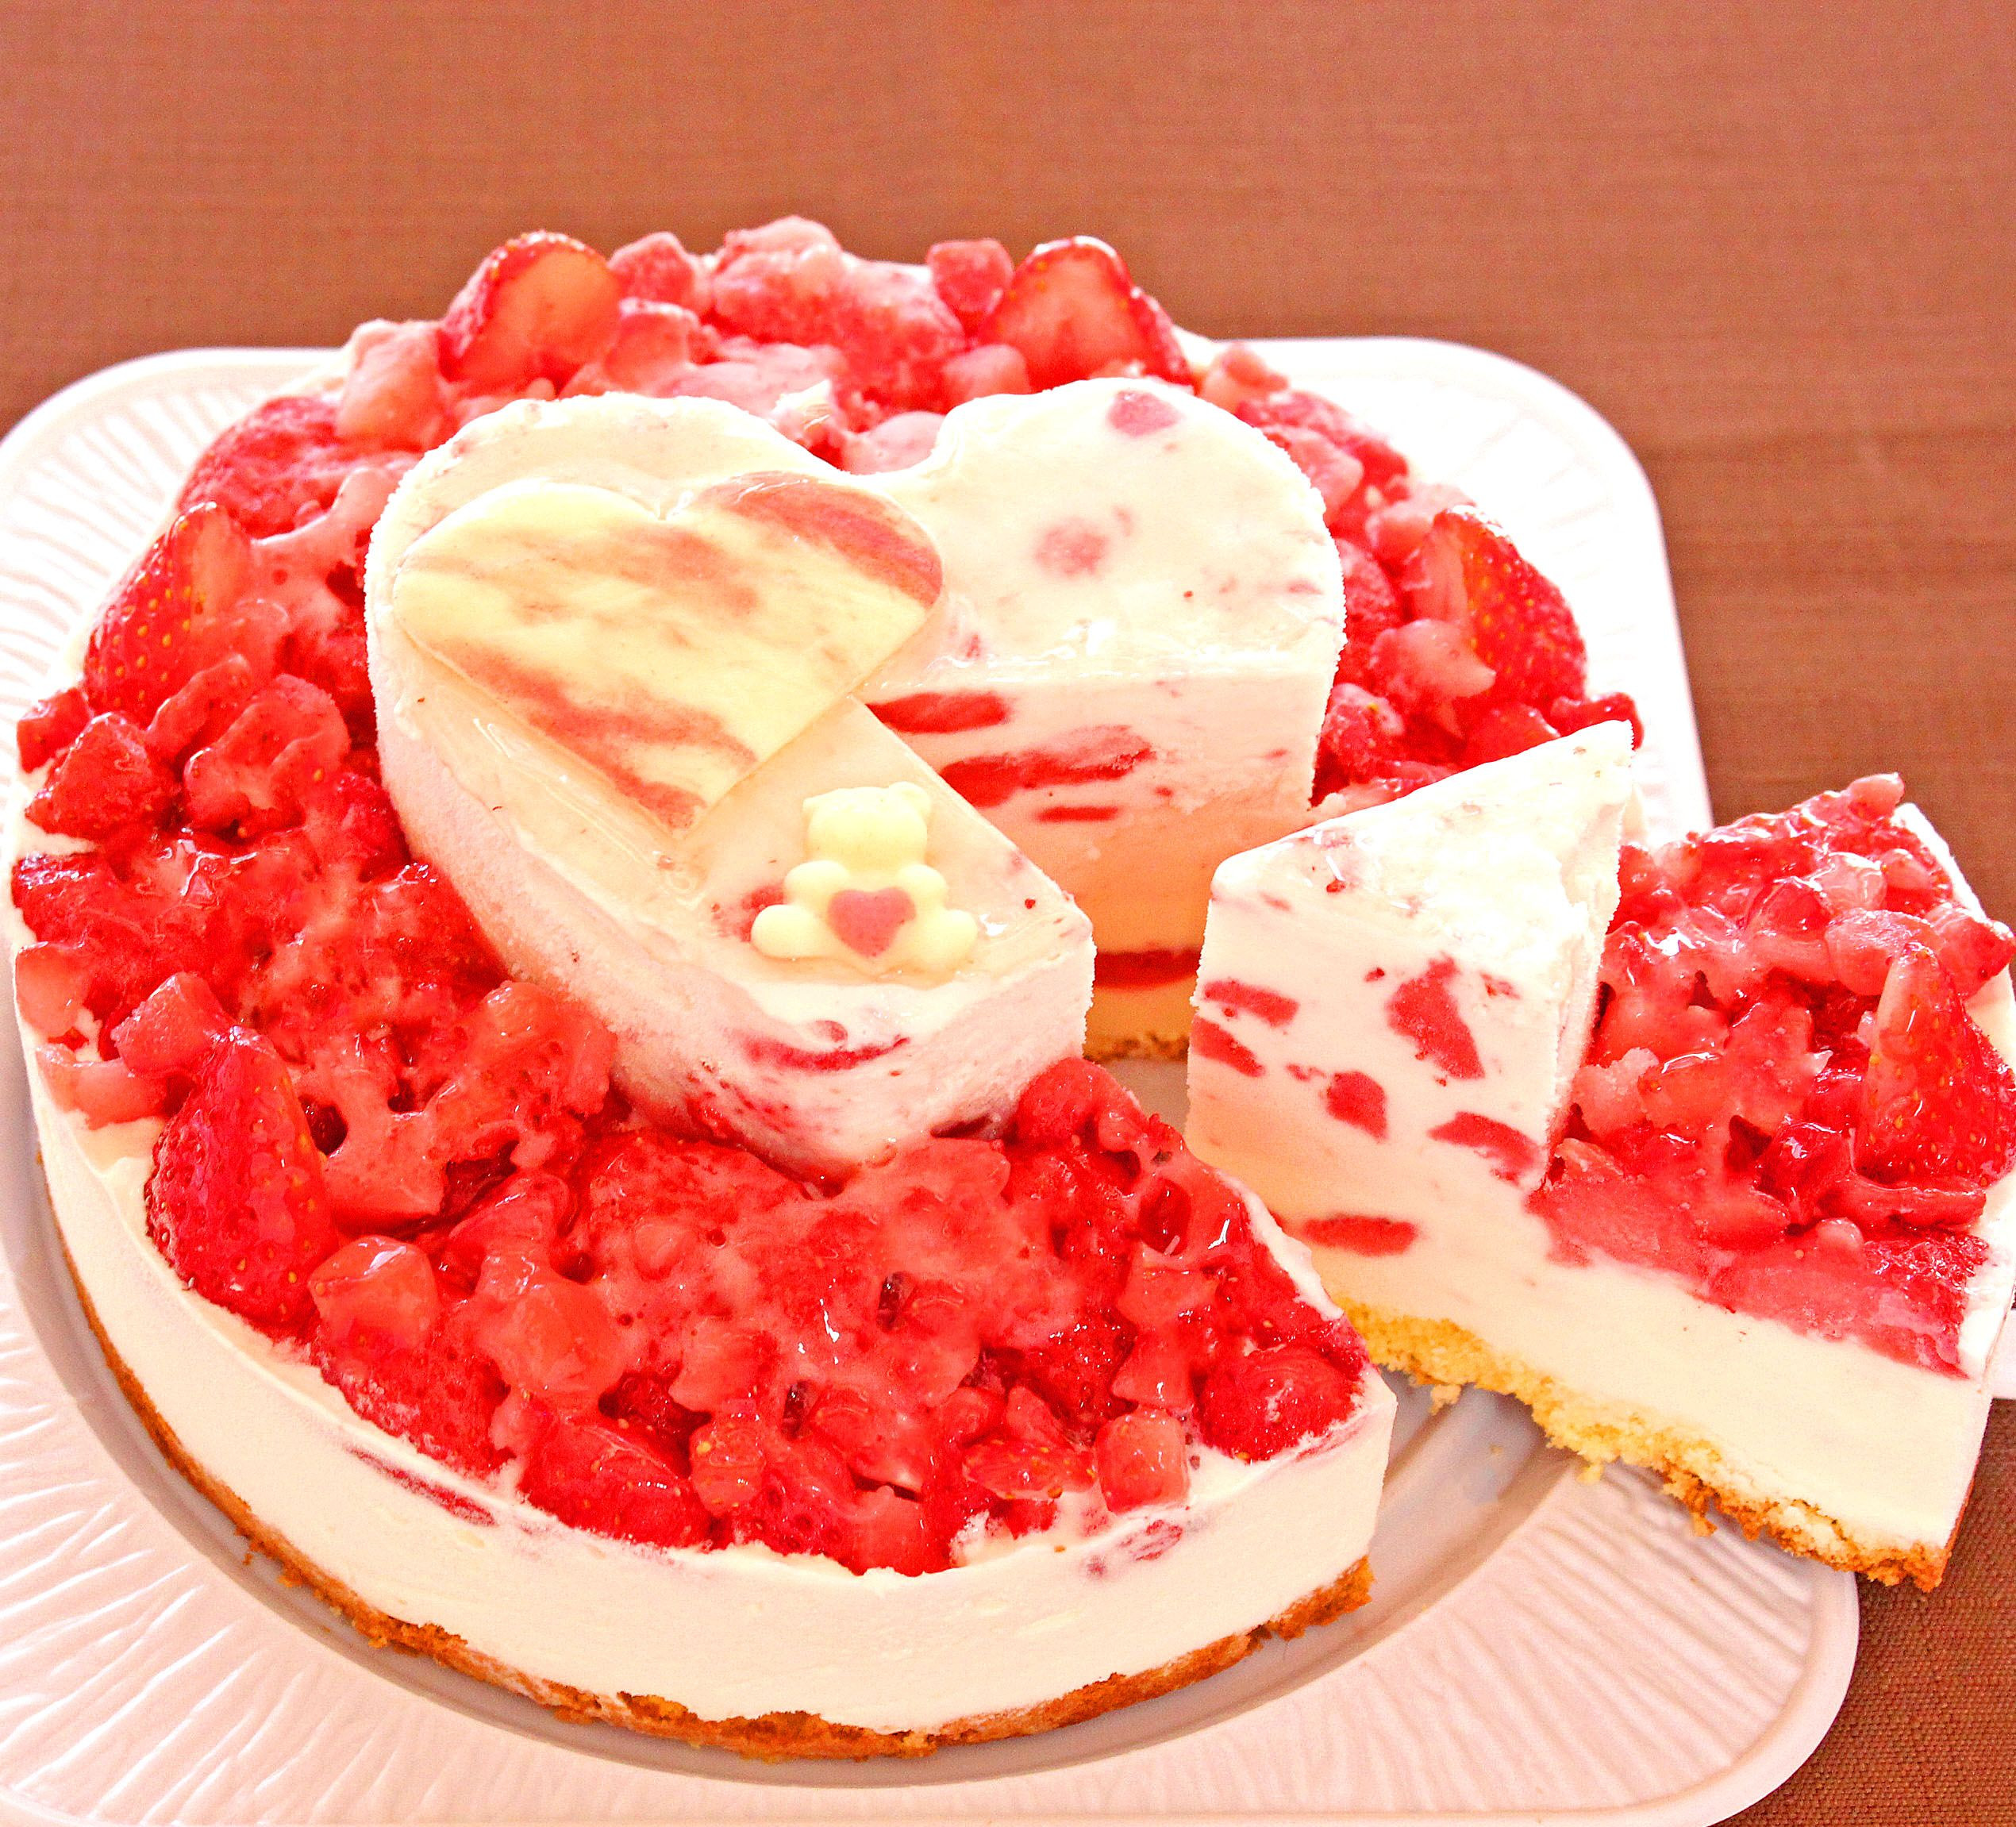 ハート型ケーキ 6号サイズ いちごクリームタイプ バレンタインデーにおすすめ 通販